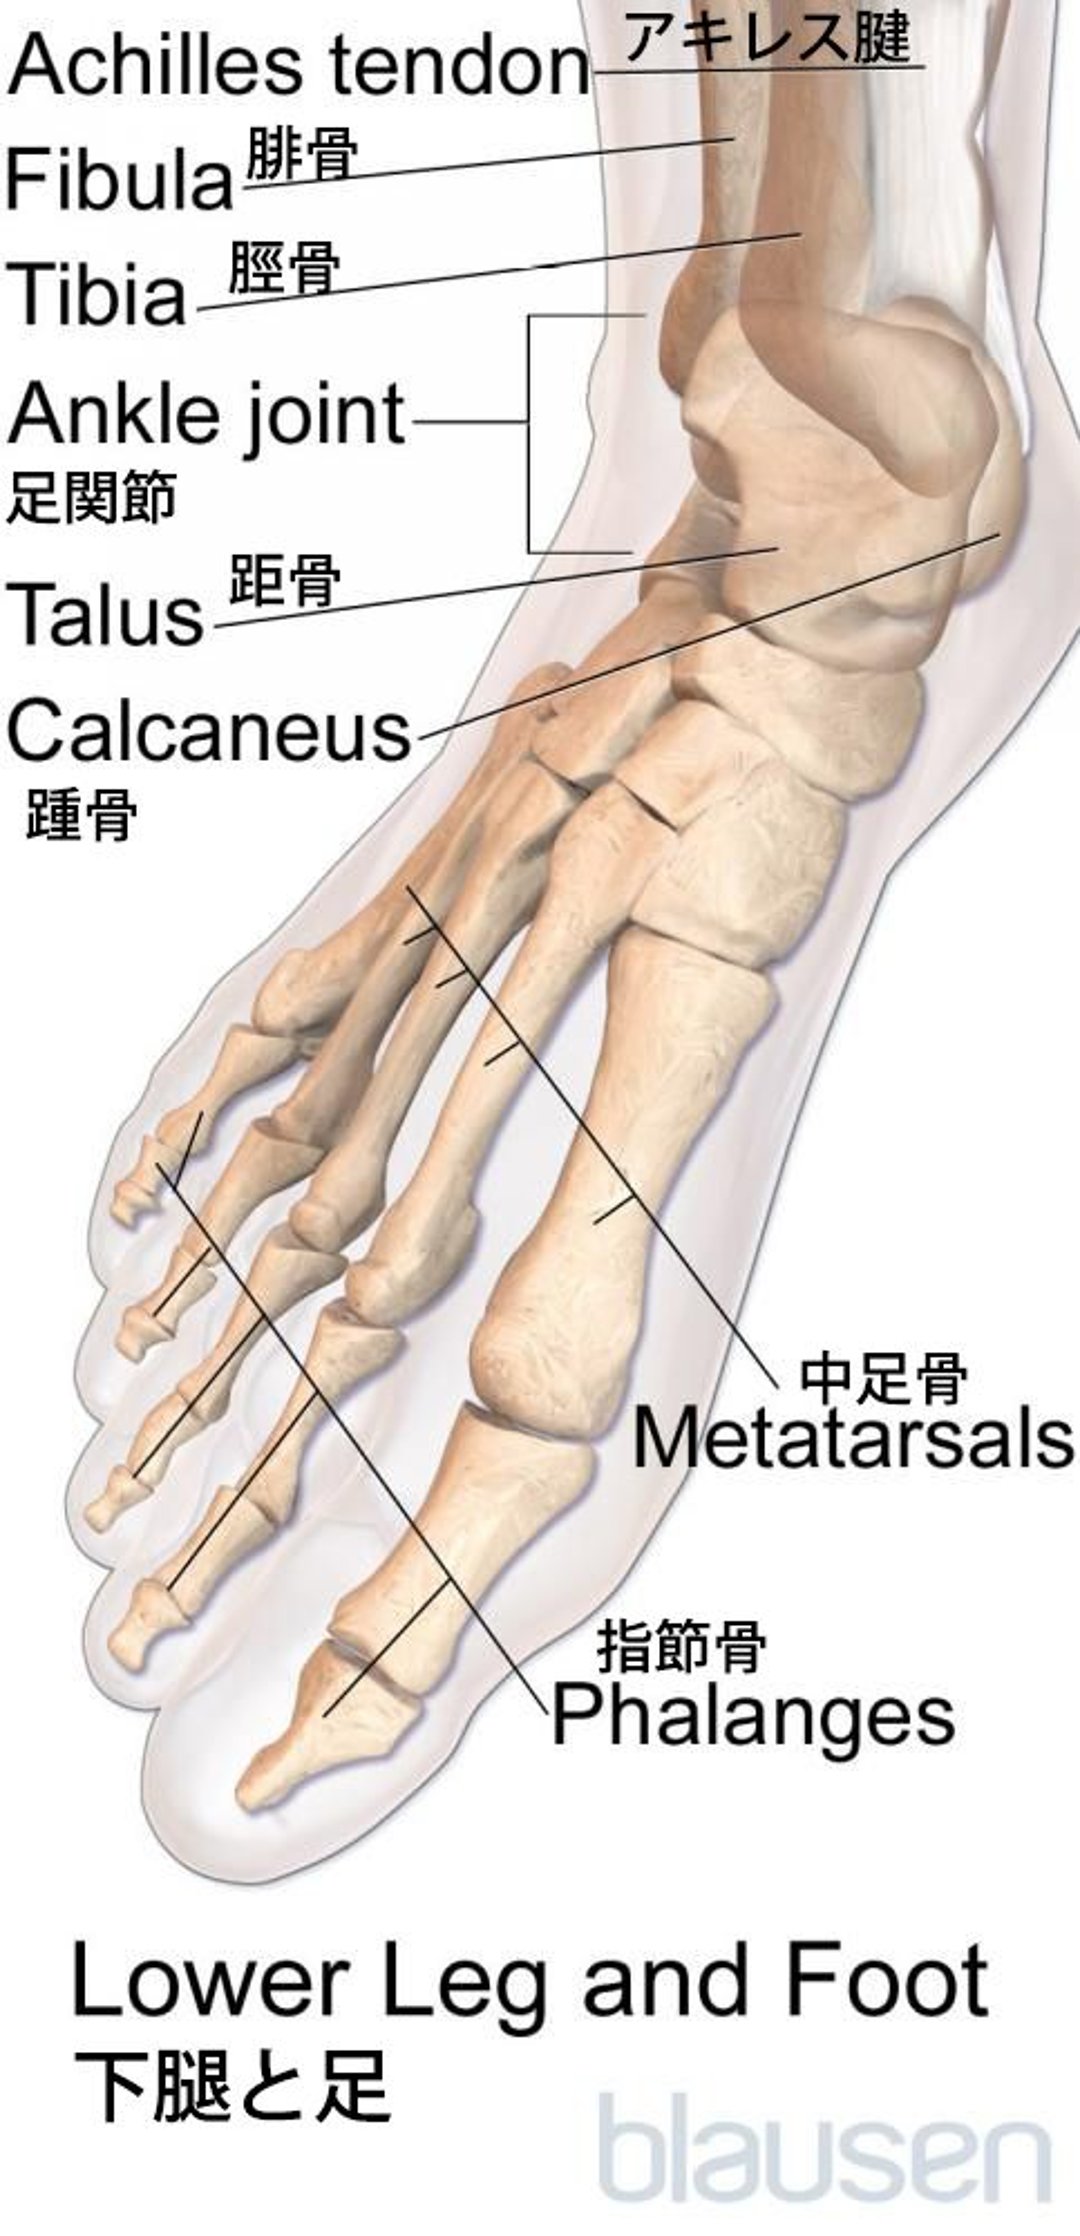 足の解剖学的構造